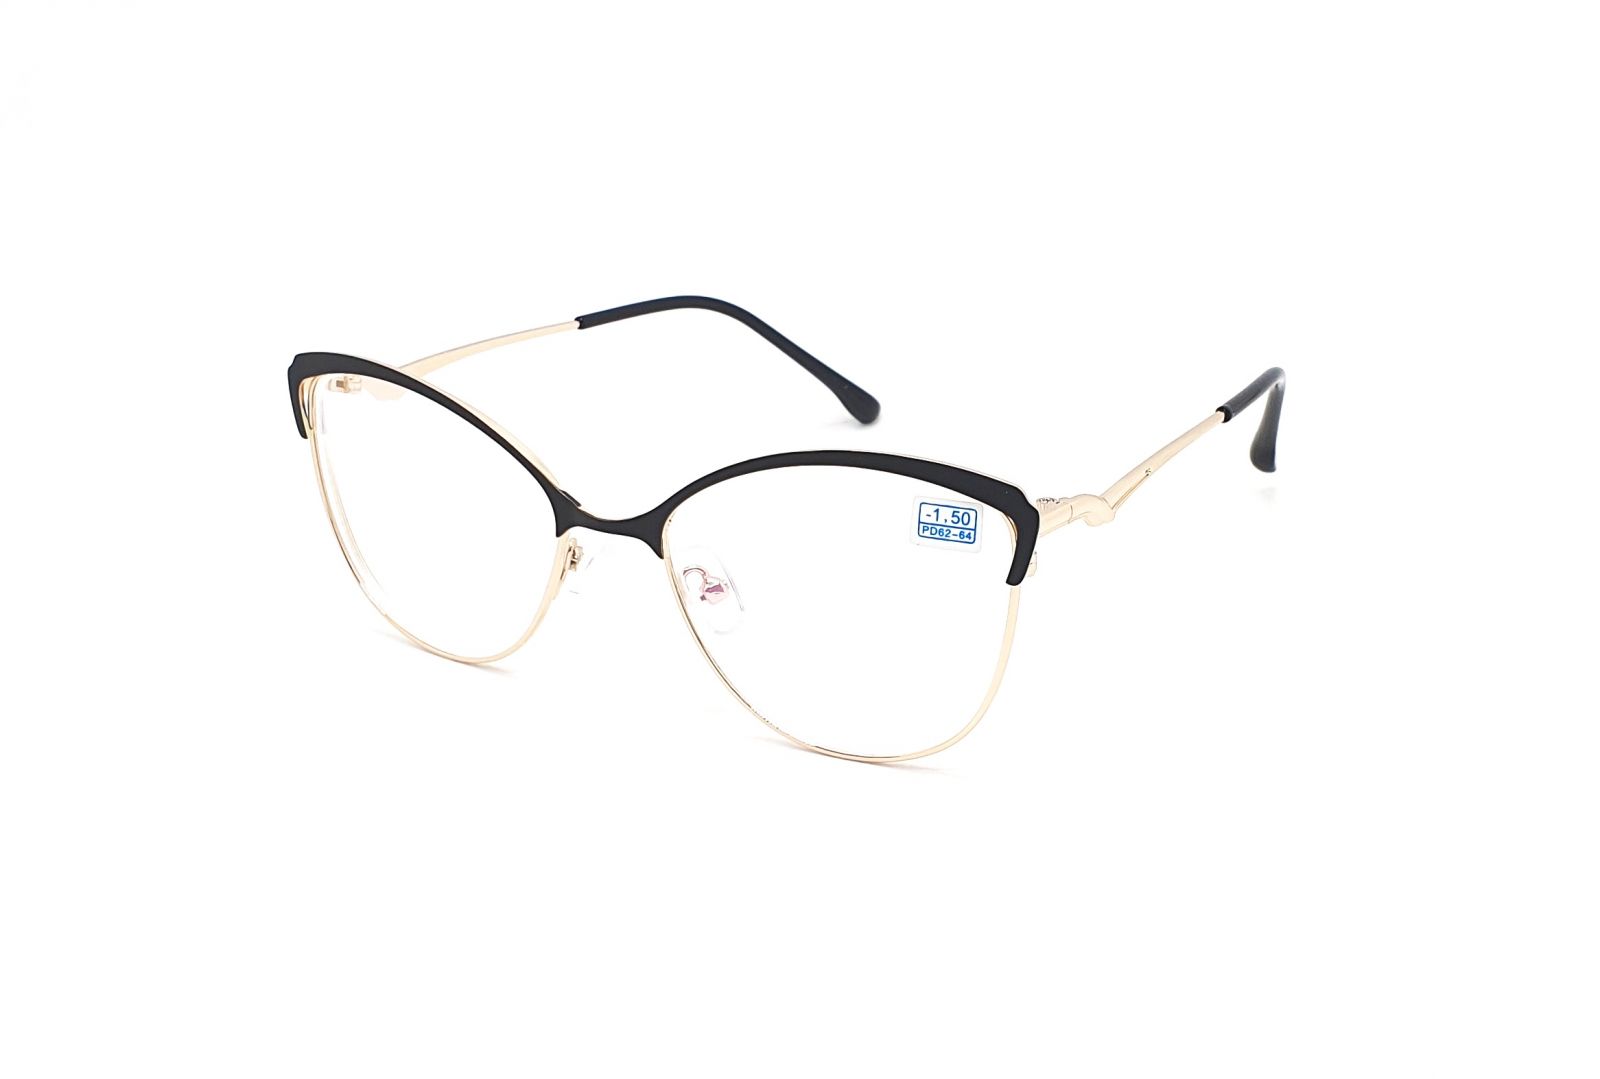 Dioptrické brýle 850 / -3,50 black/gold s antireflexní vrstvou